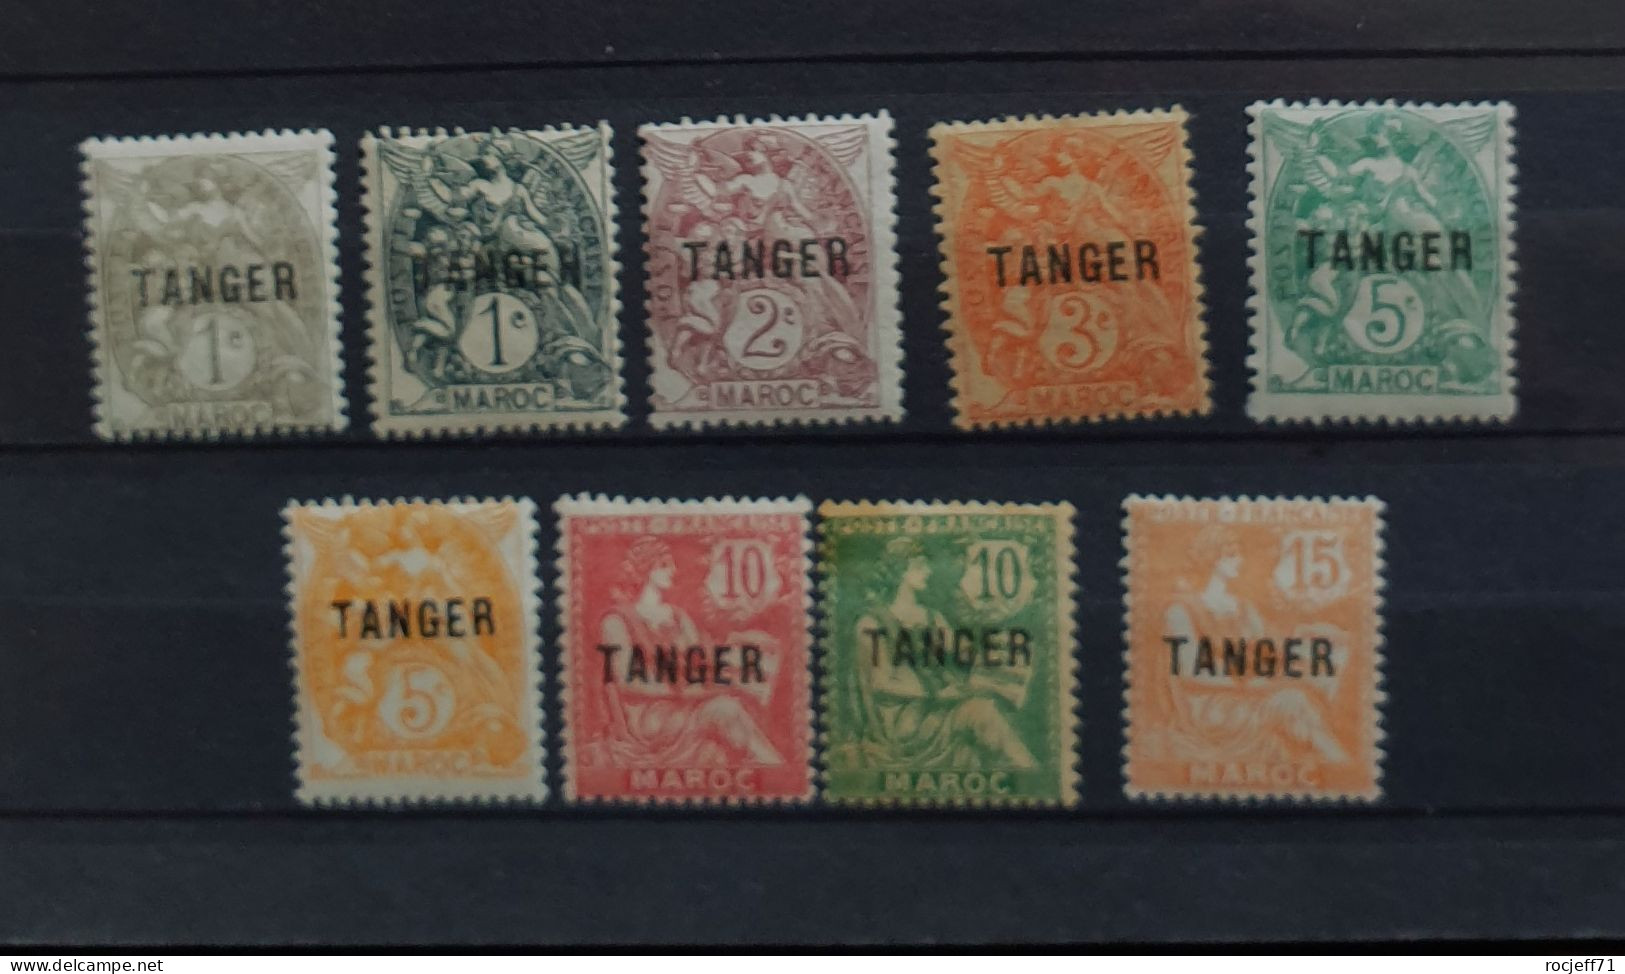 05 - 24 - Maroc - N° 80 à 87 * - MH - Surchargé Tanger - Unused Stamps